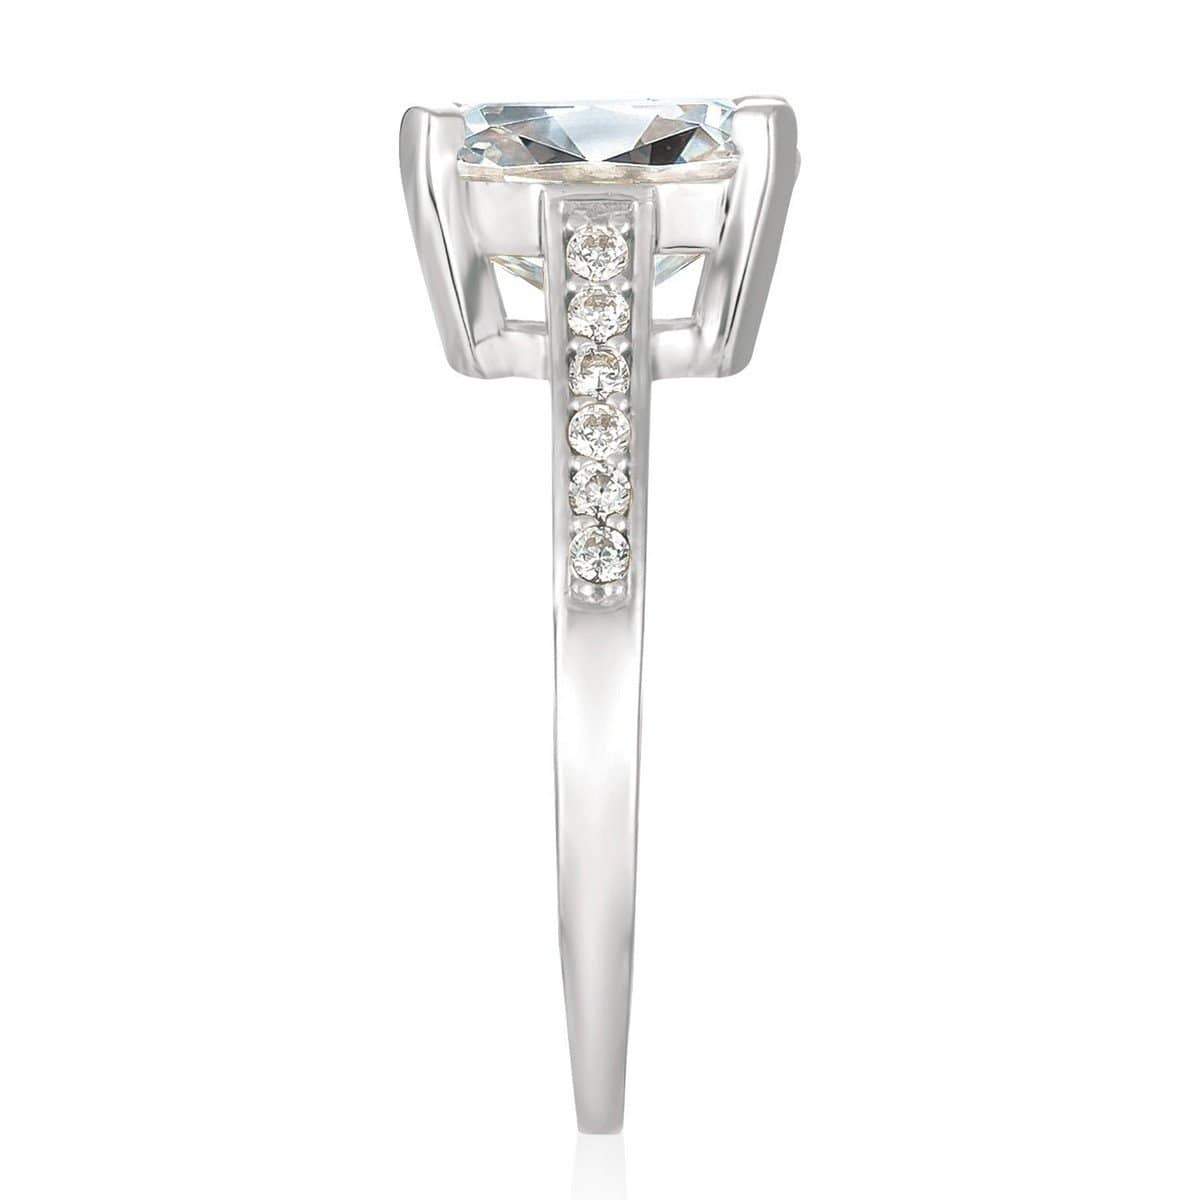 Crislu Jewelry CRISLU Radiant Cushion Cut Ring finished in Pure Platinum - Size 7